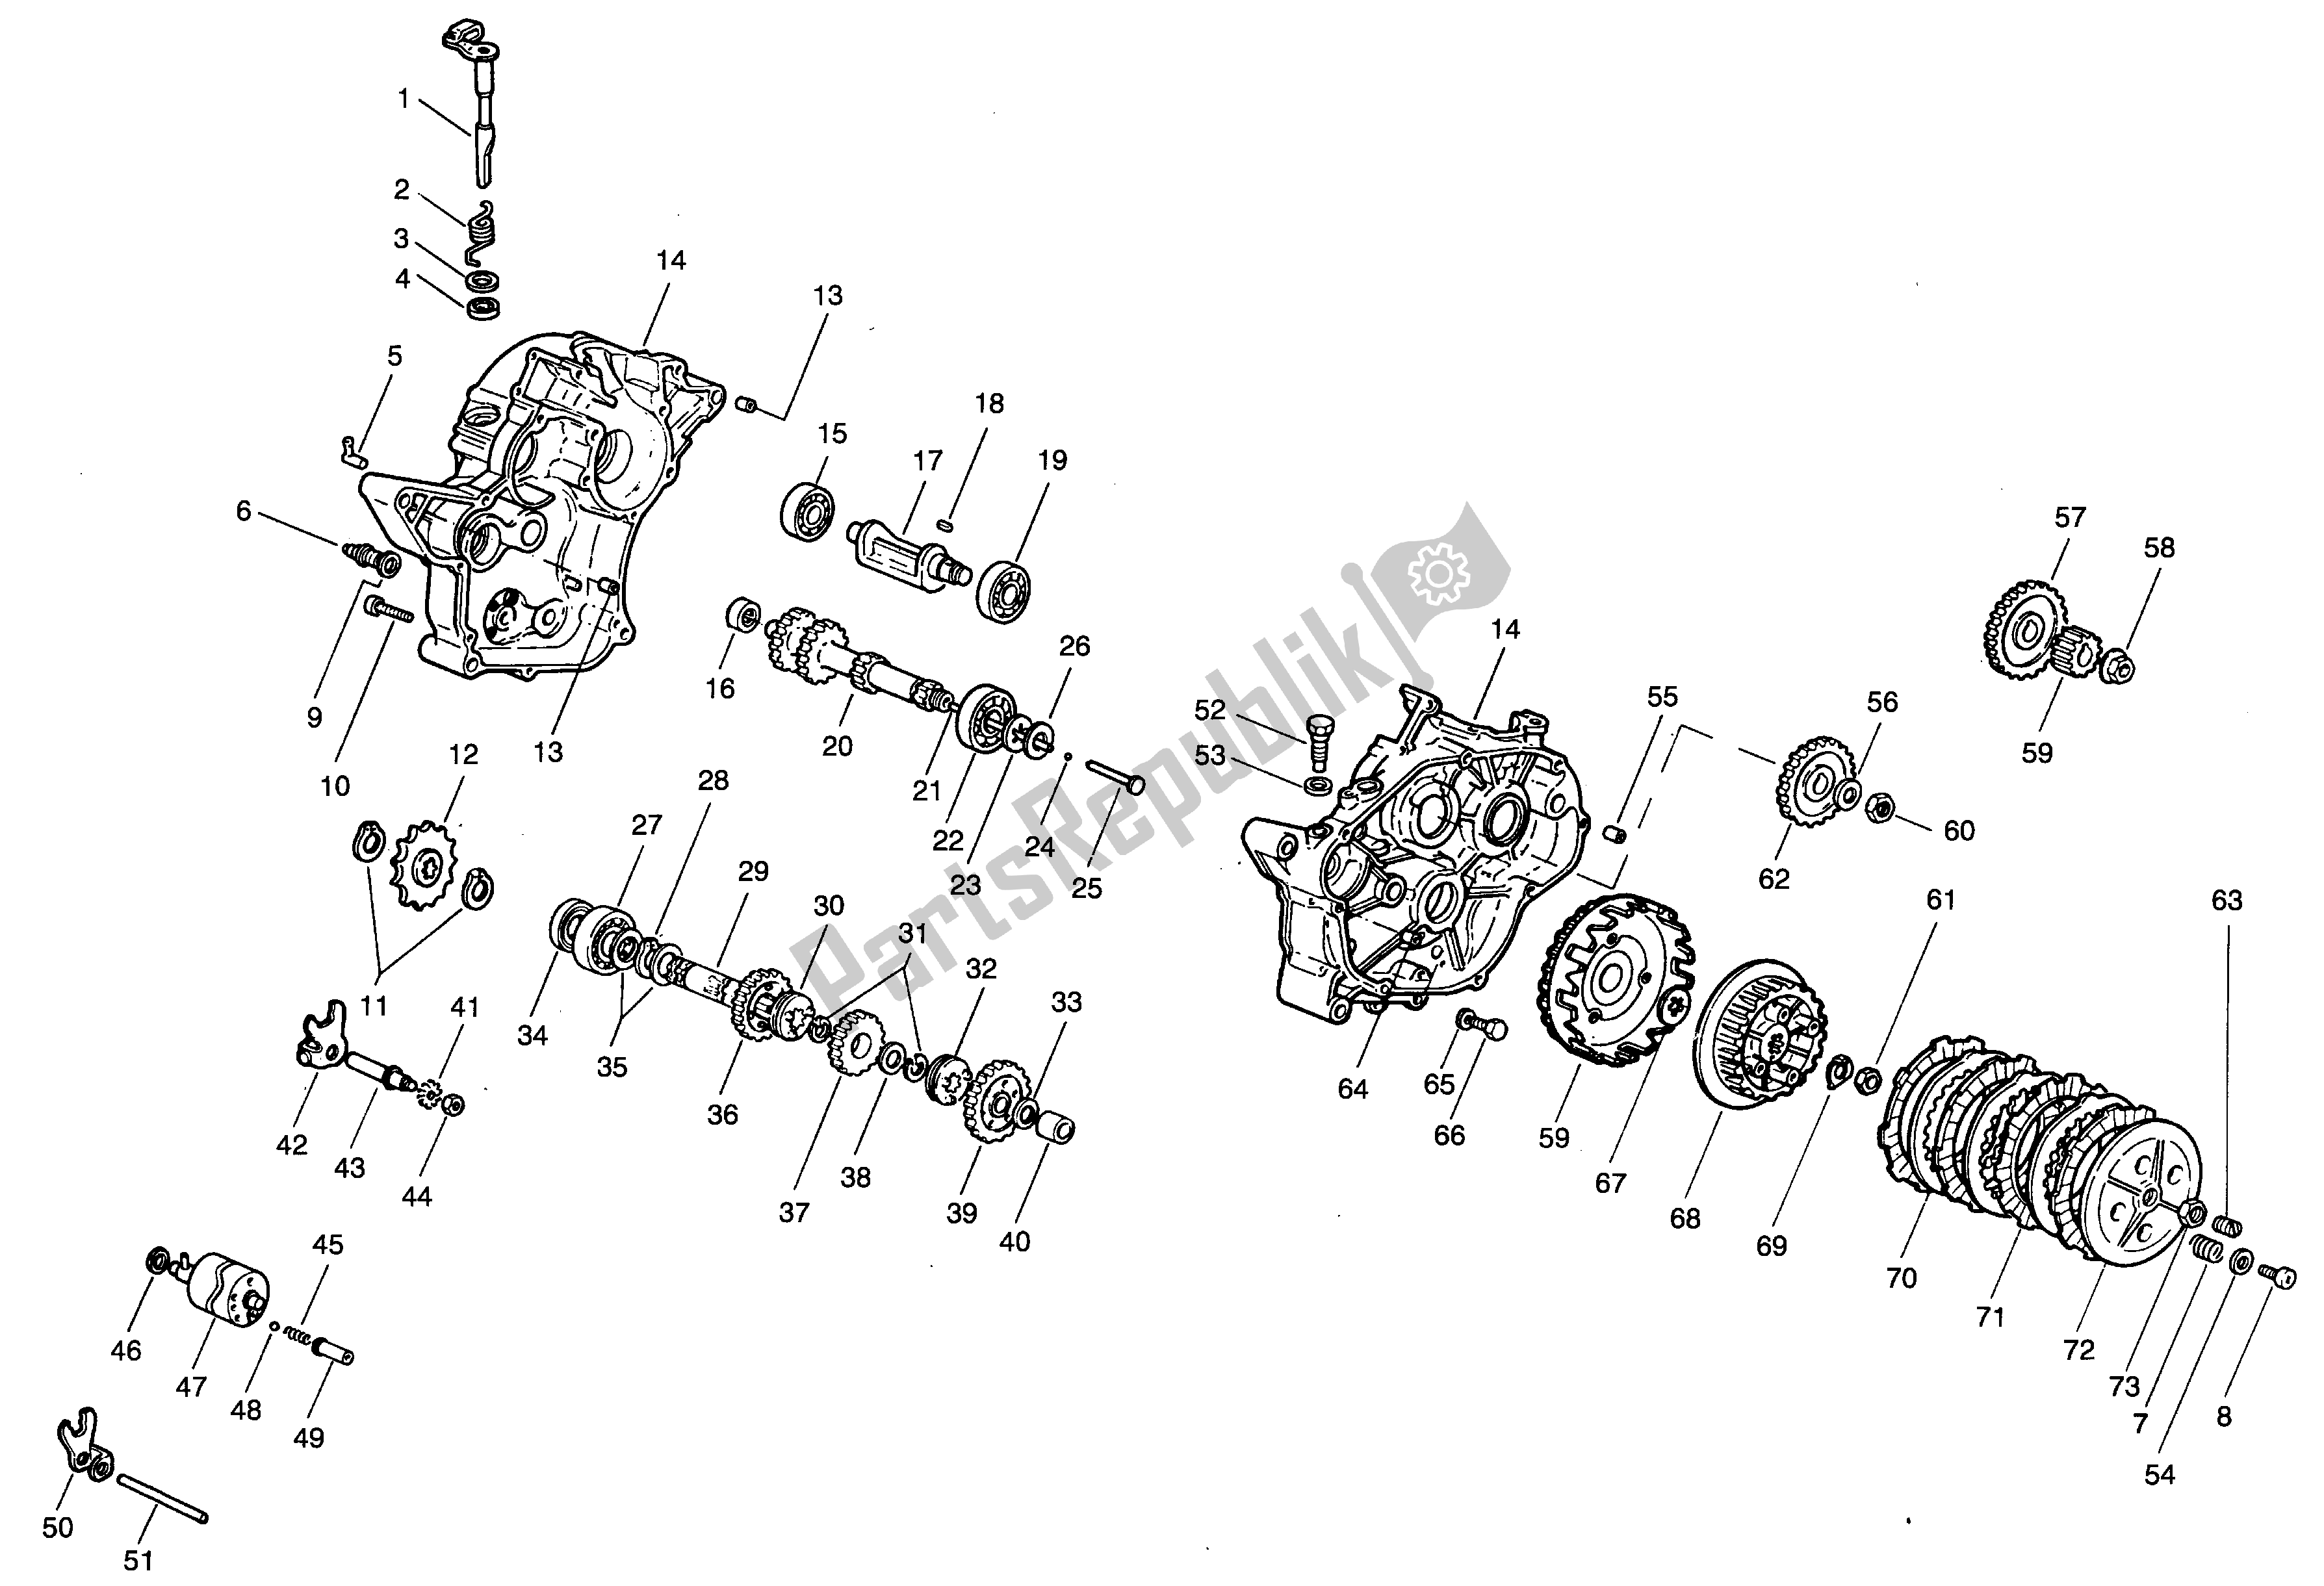 All parts for the Crankcase - Clutch - Trasmission of the Aprilia Minarelli 50 1991 - 1999